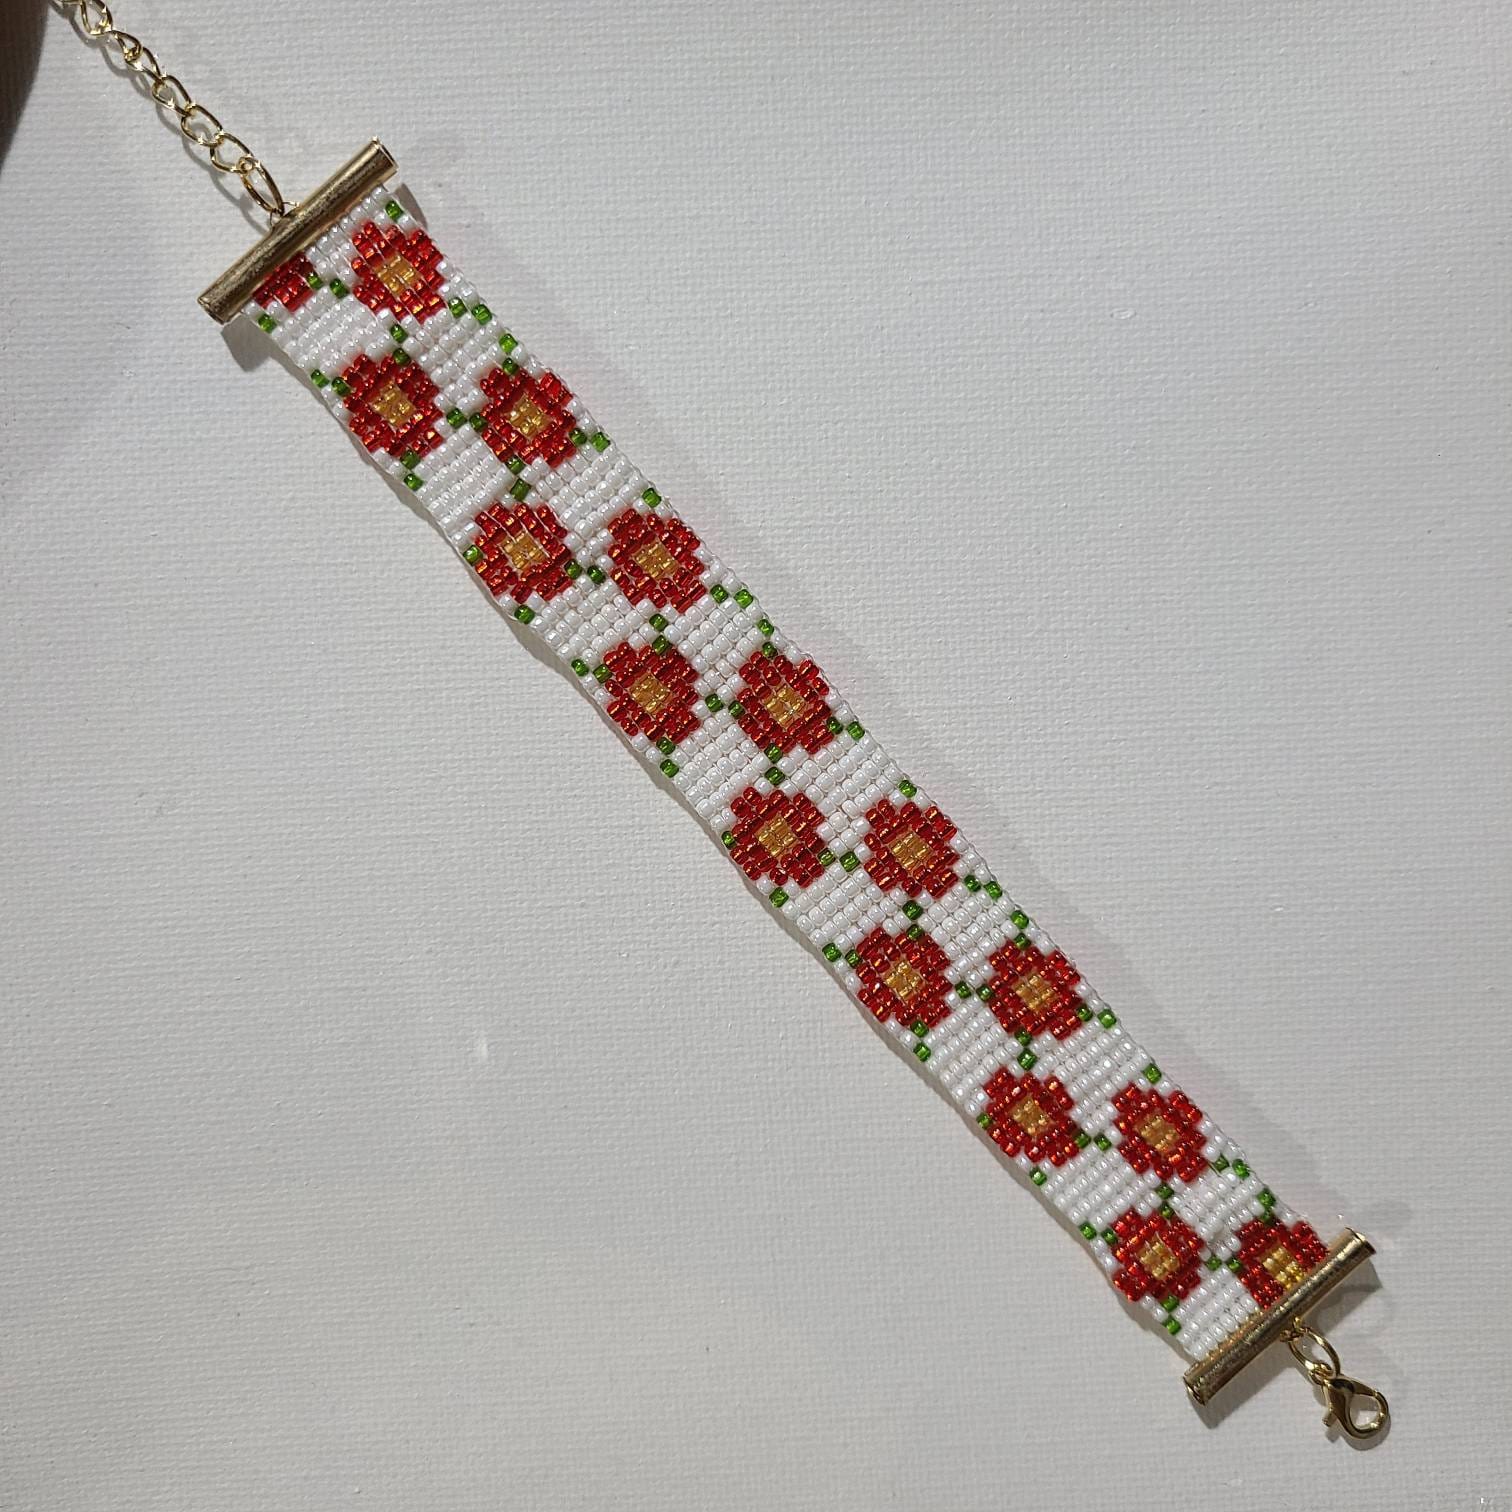 Cherry Blossom Festival Beaded Bracelet Tutorial